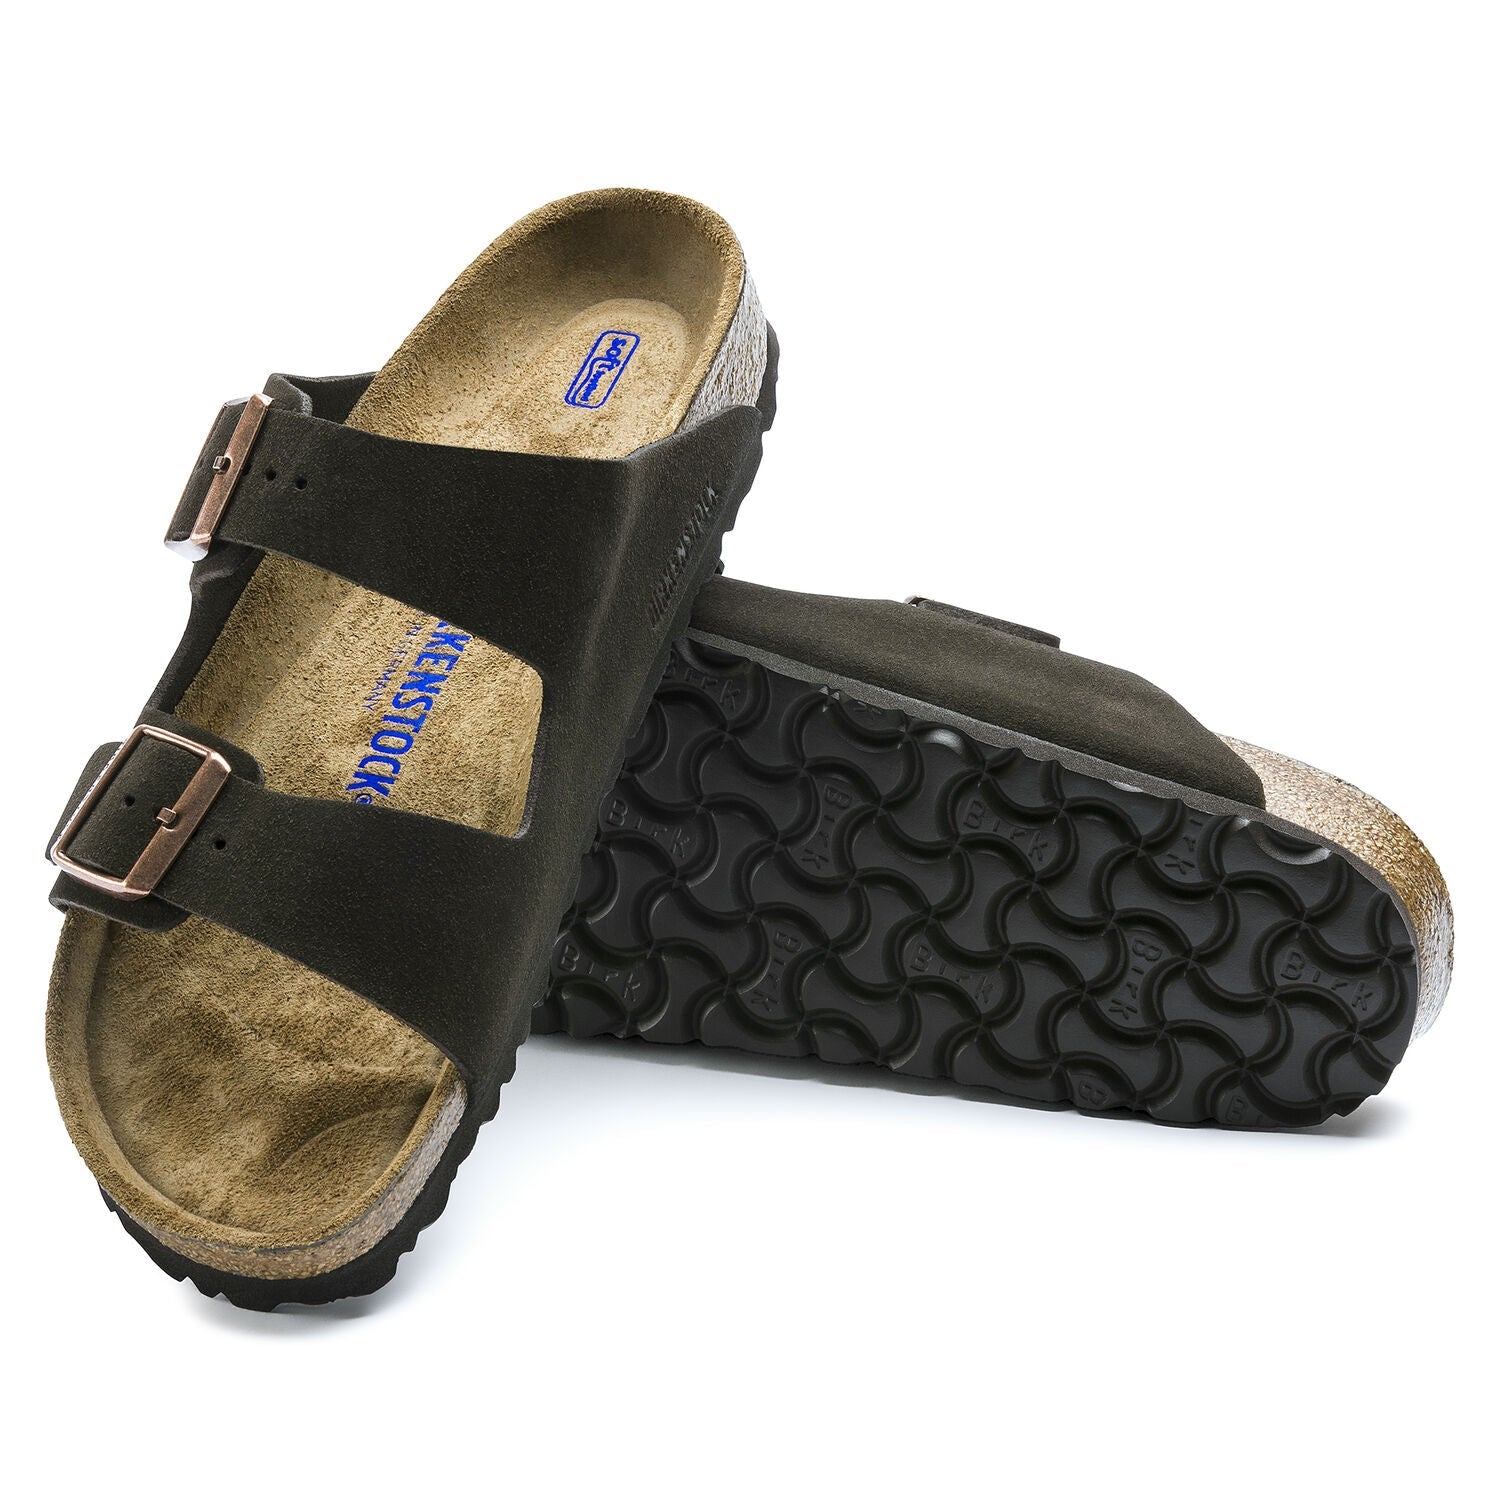 Birkenstock Florida Soft Footbed Sandals for Women in Mocha